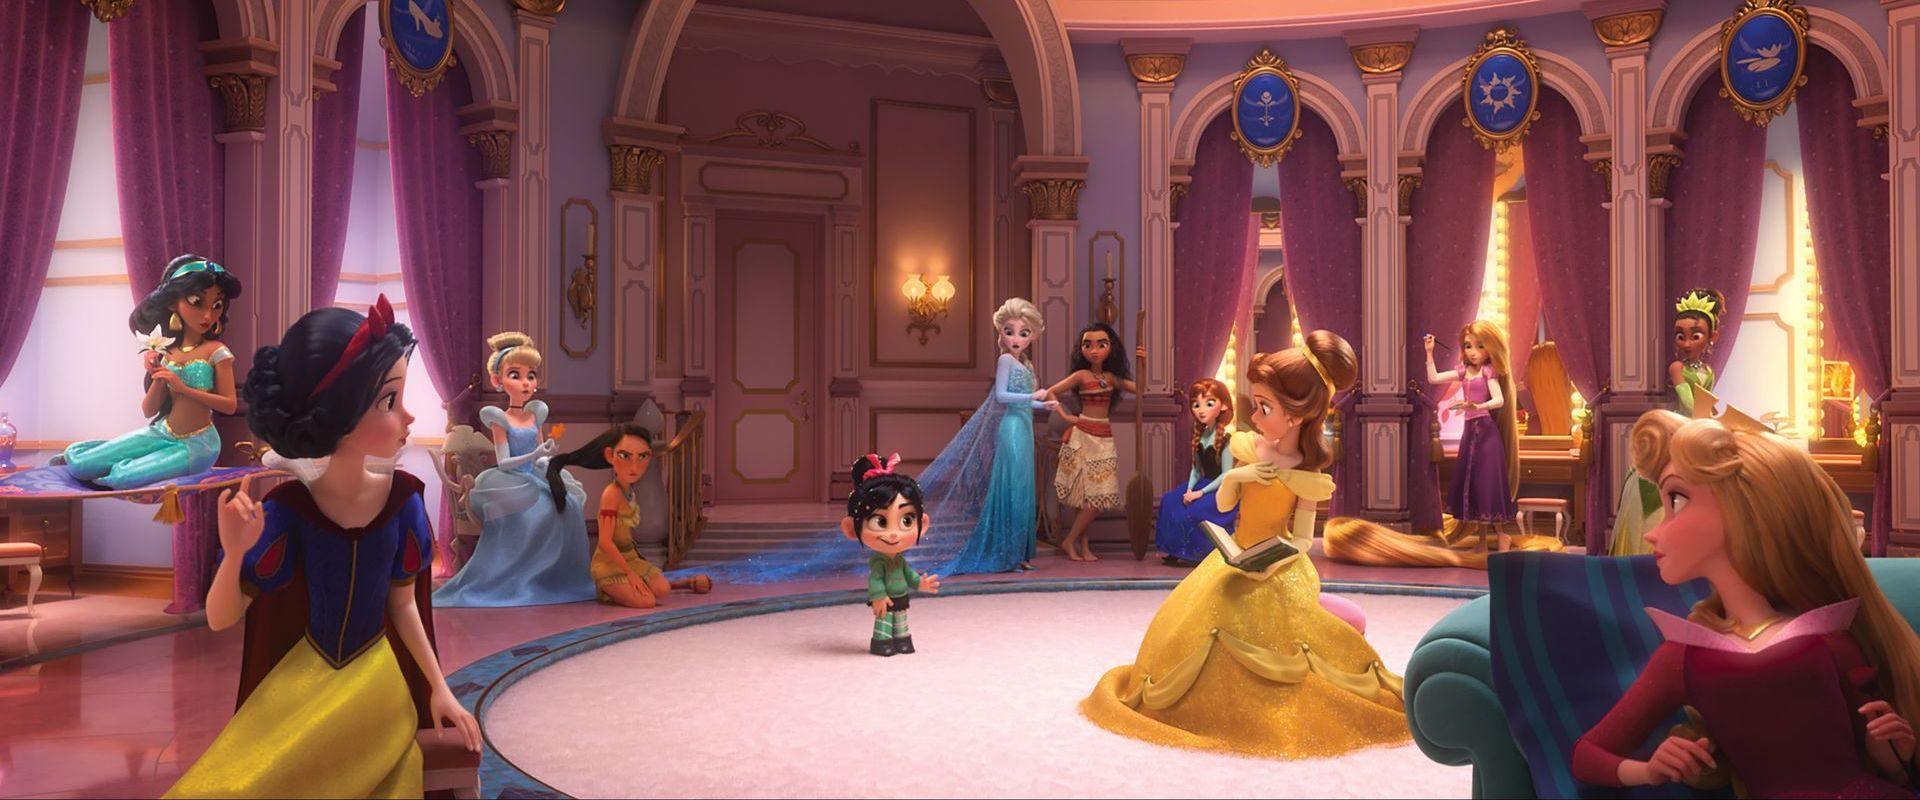 Qué princesas Disney serían las comunidades autónomas?